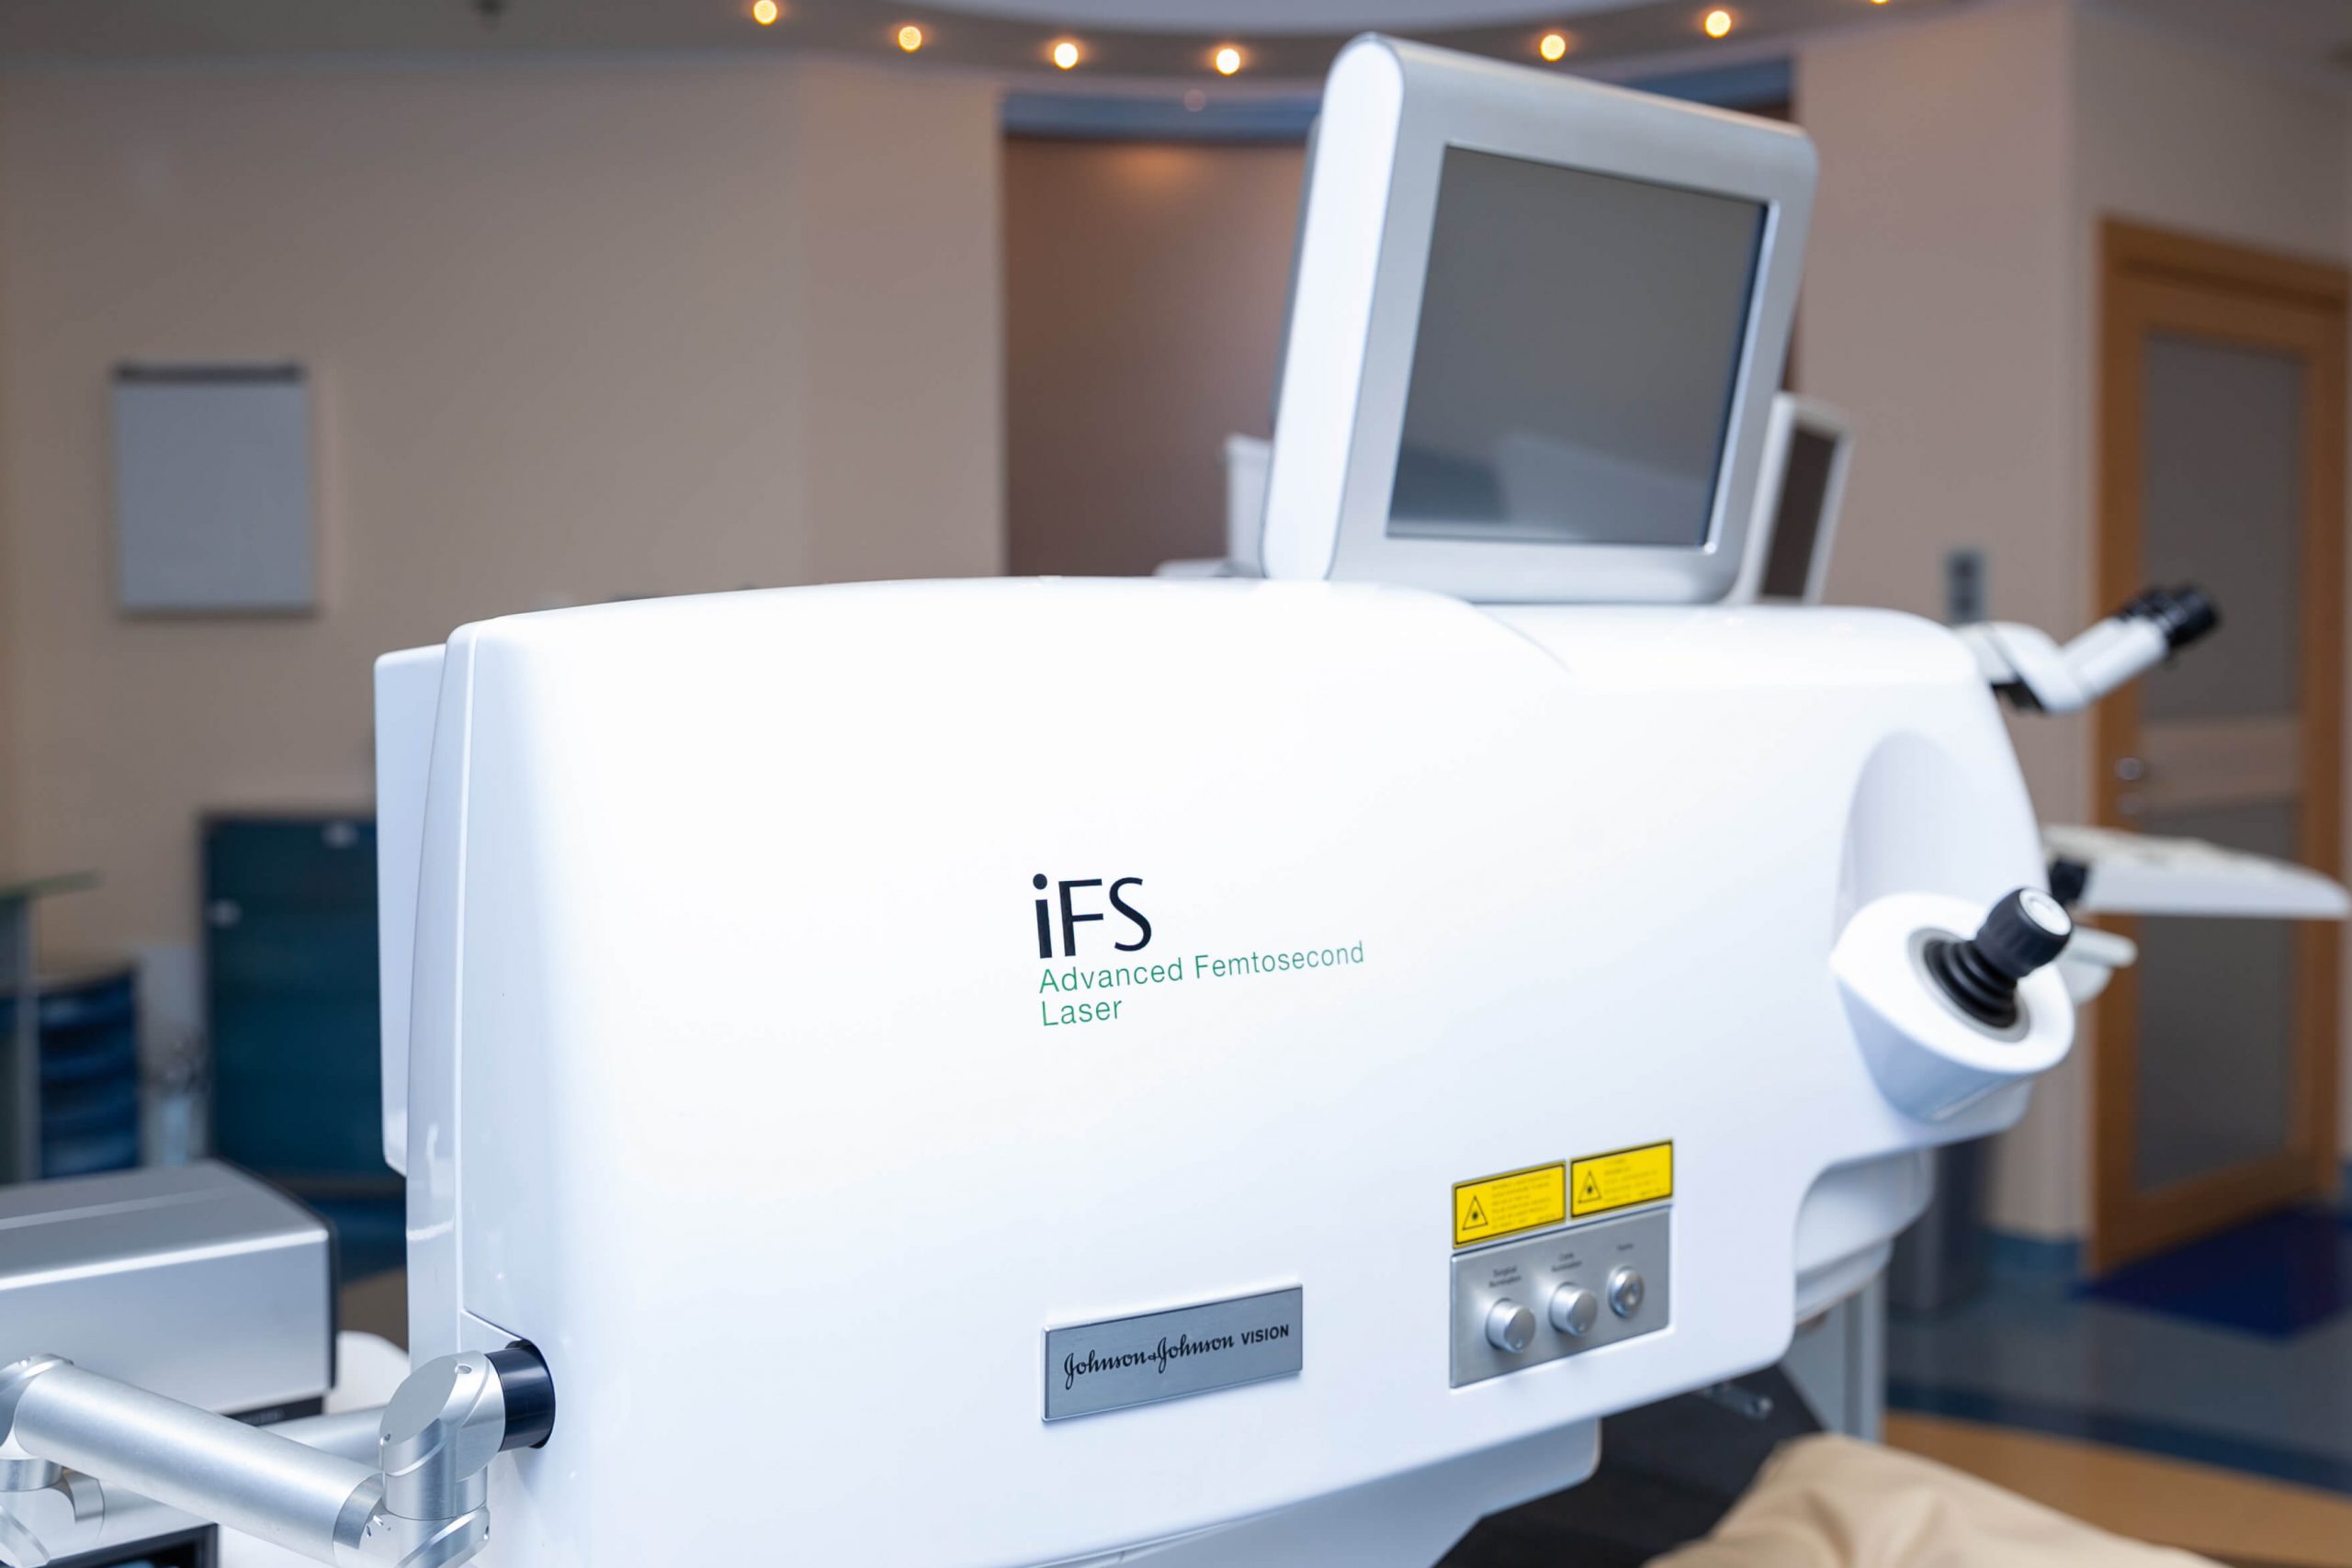 Blikpol 18 scaled - Blikpol Eye Clinic Sopot - najnowocześniejsze technologie w korekcji wzroku i leczeniu zaćmy